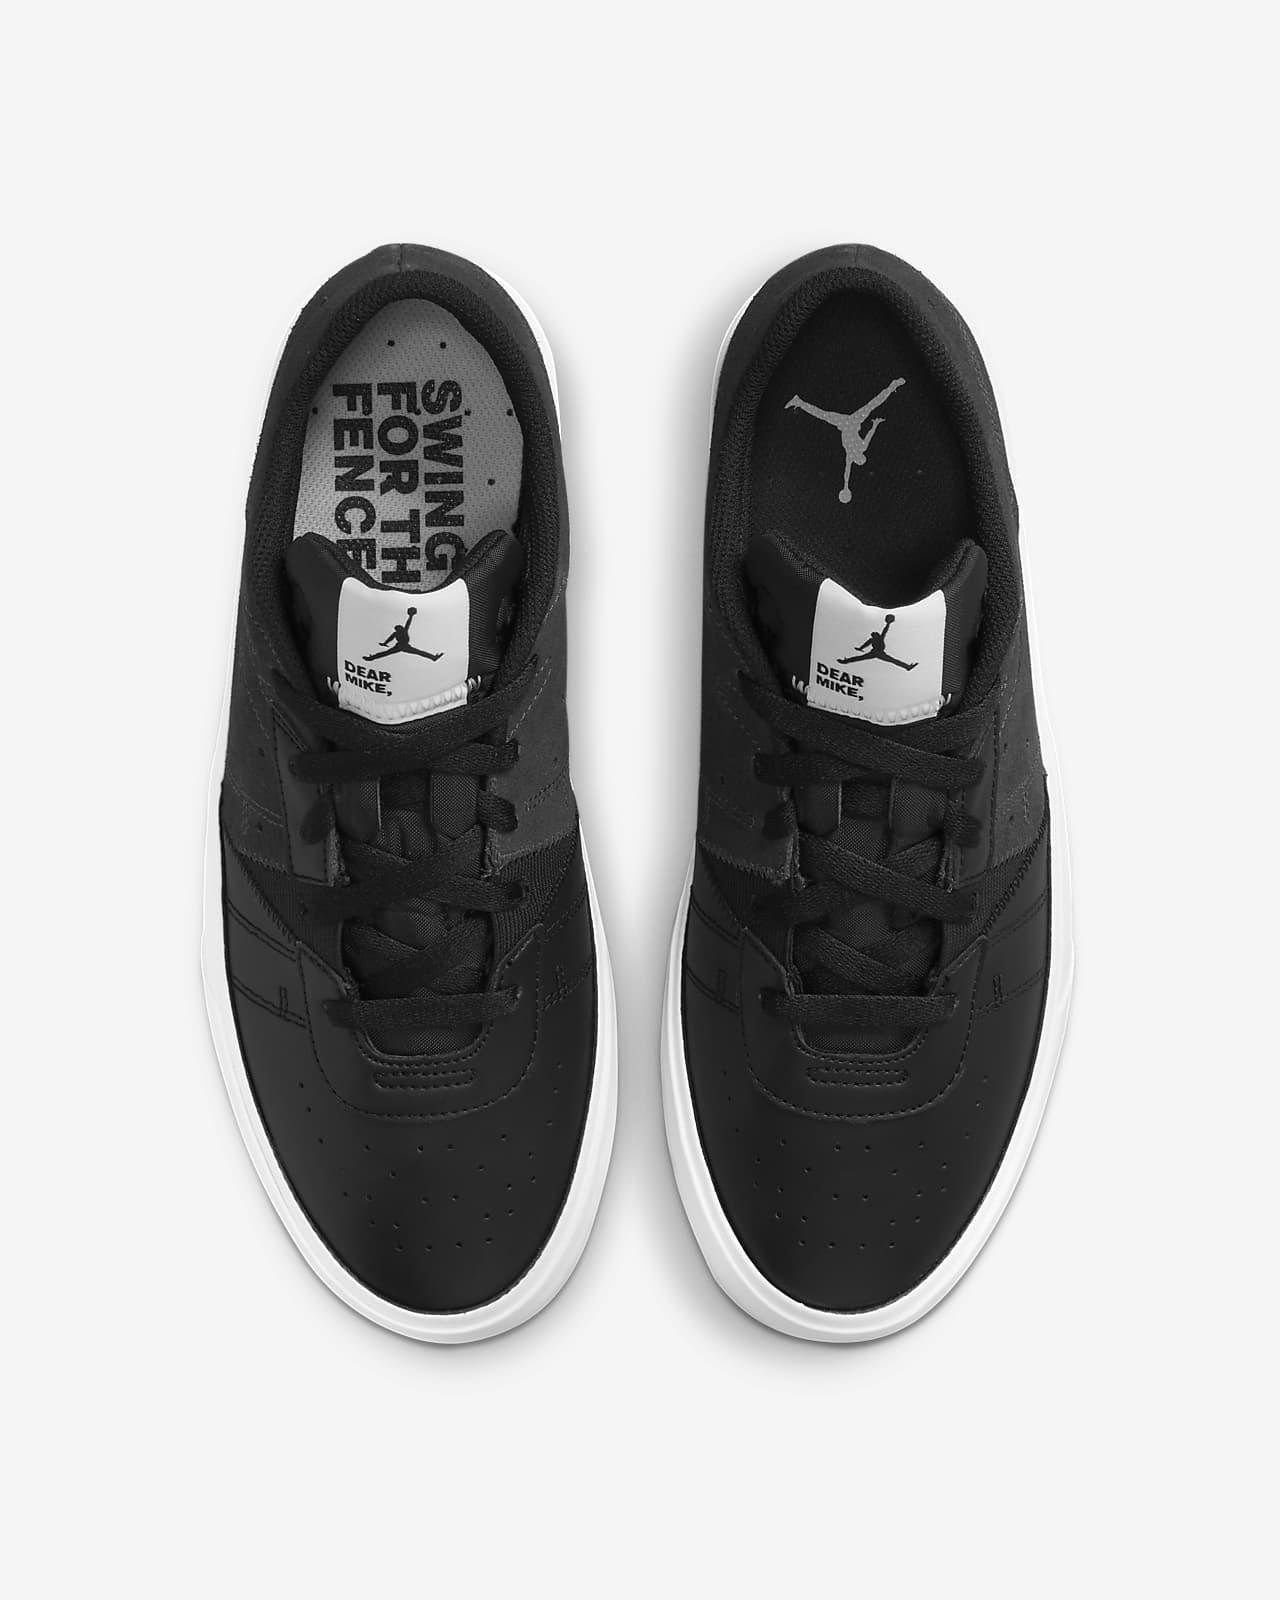 Jordan Series .01 "Dear Mike" Shoe. Nike ID